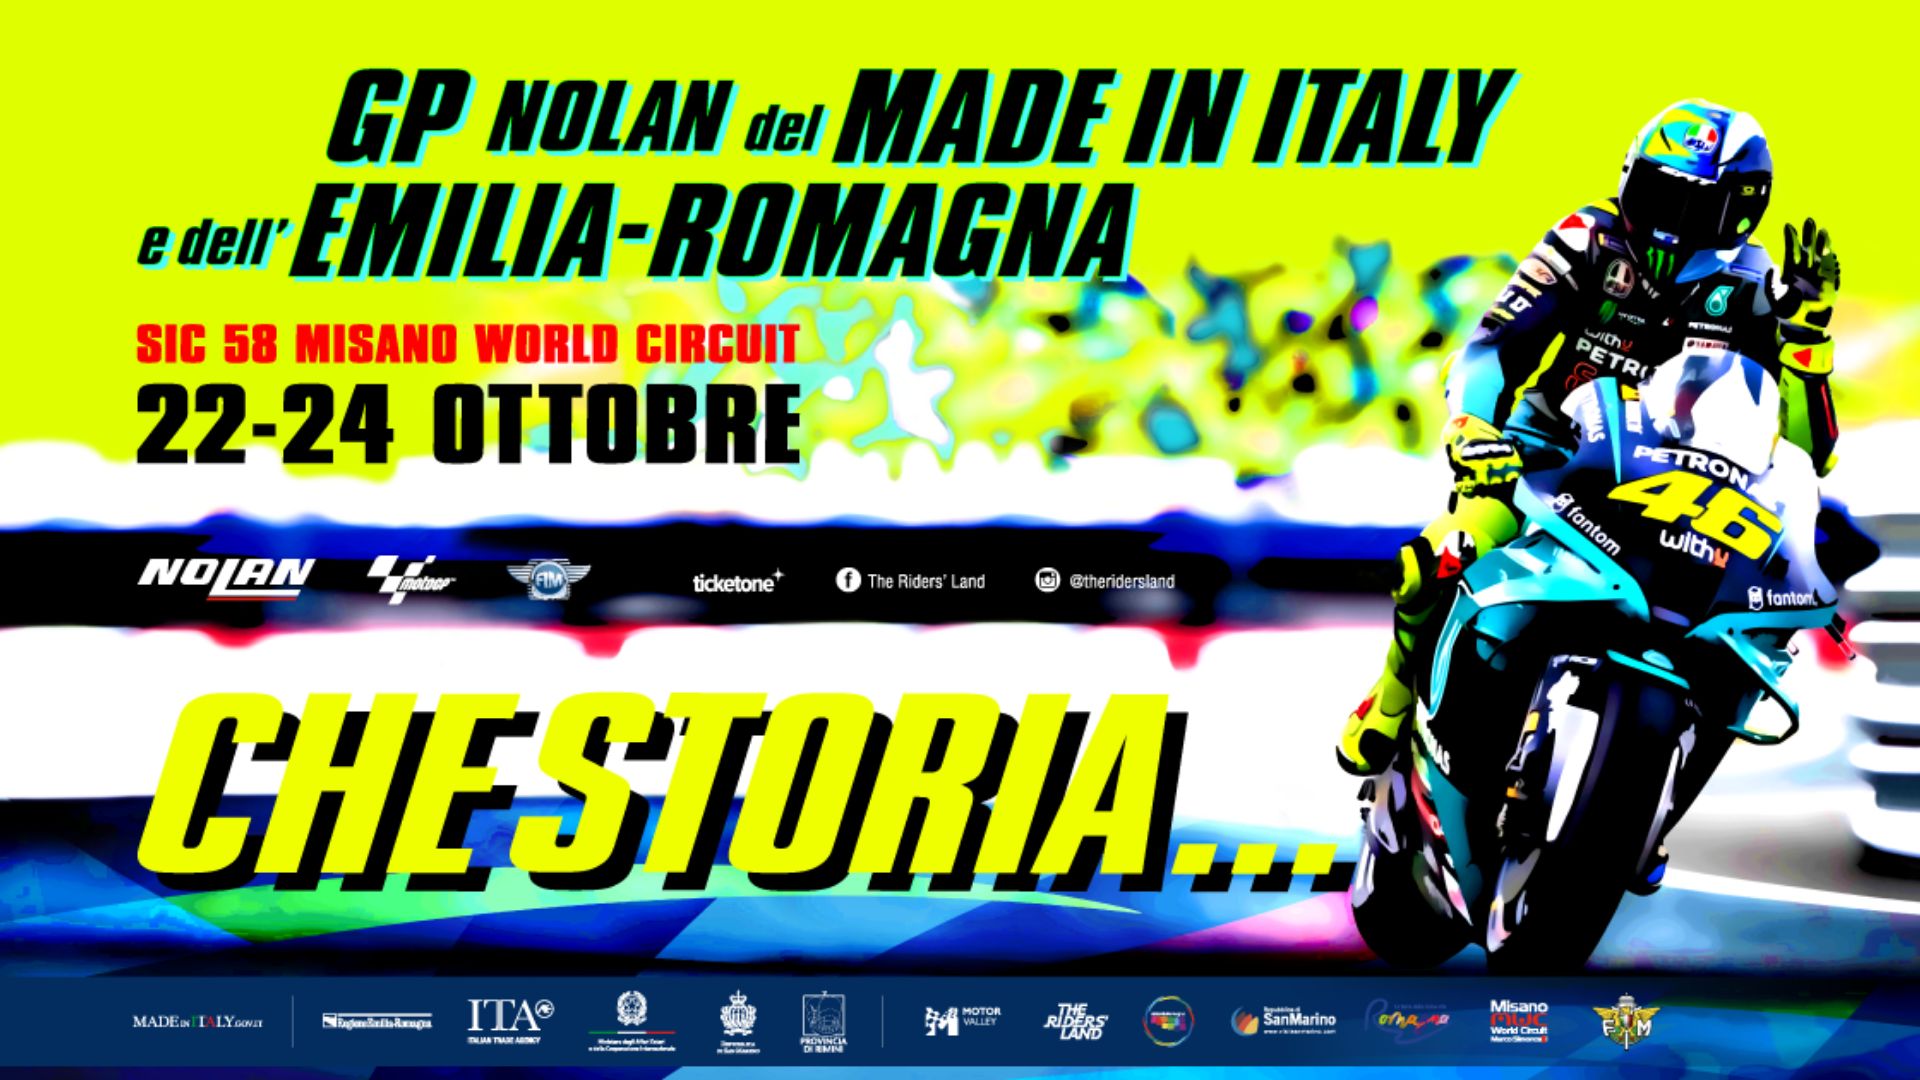 The Misano GP celebrates the myth of Valentino in Aldo Drudi’s poster.